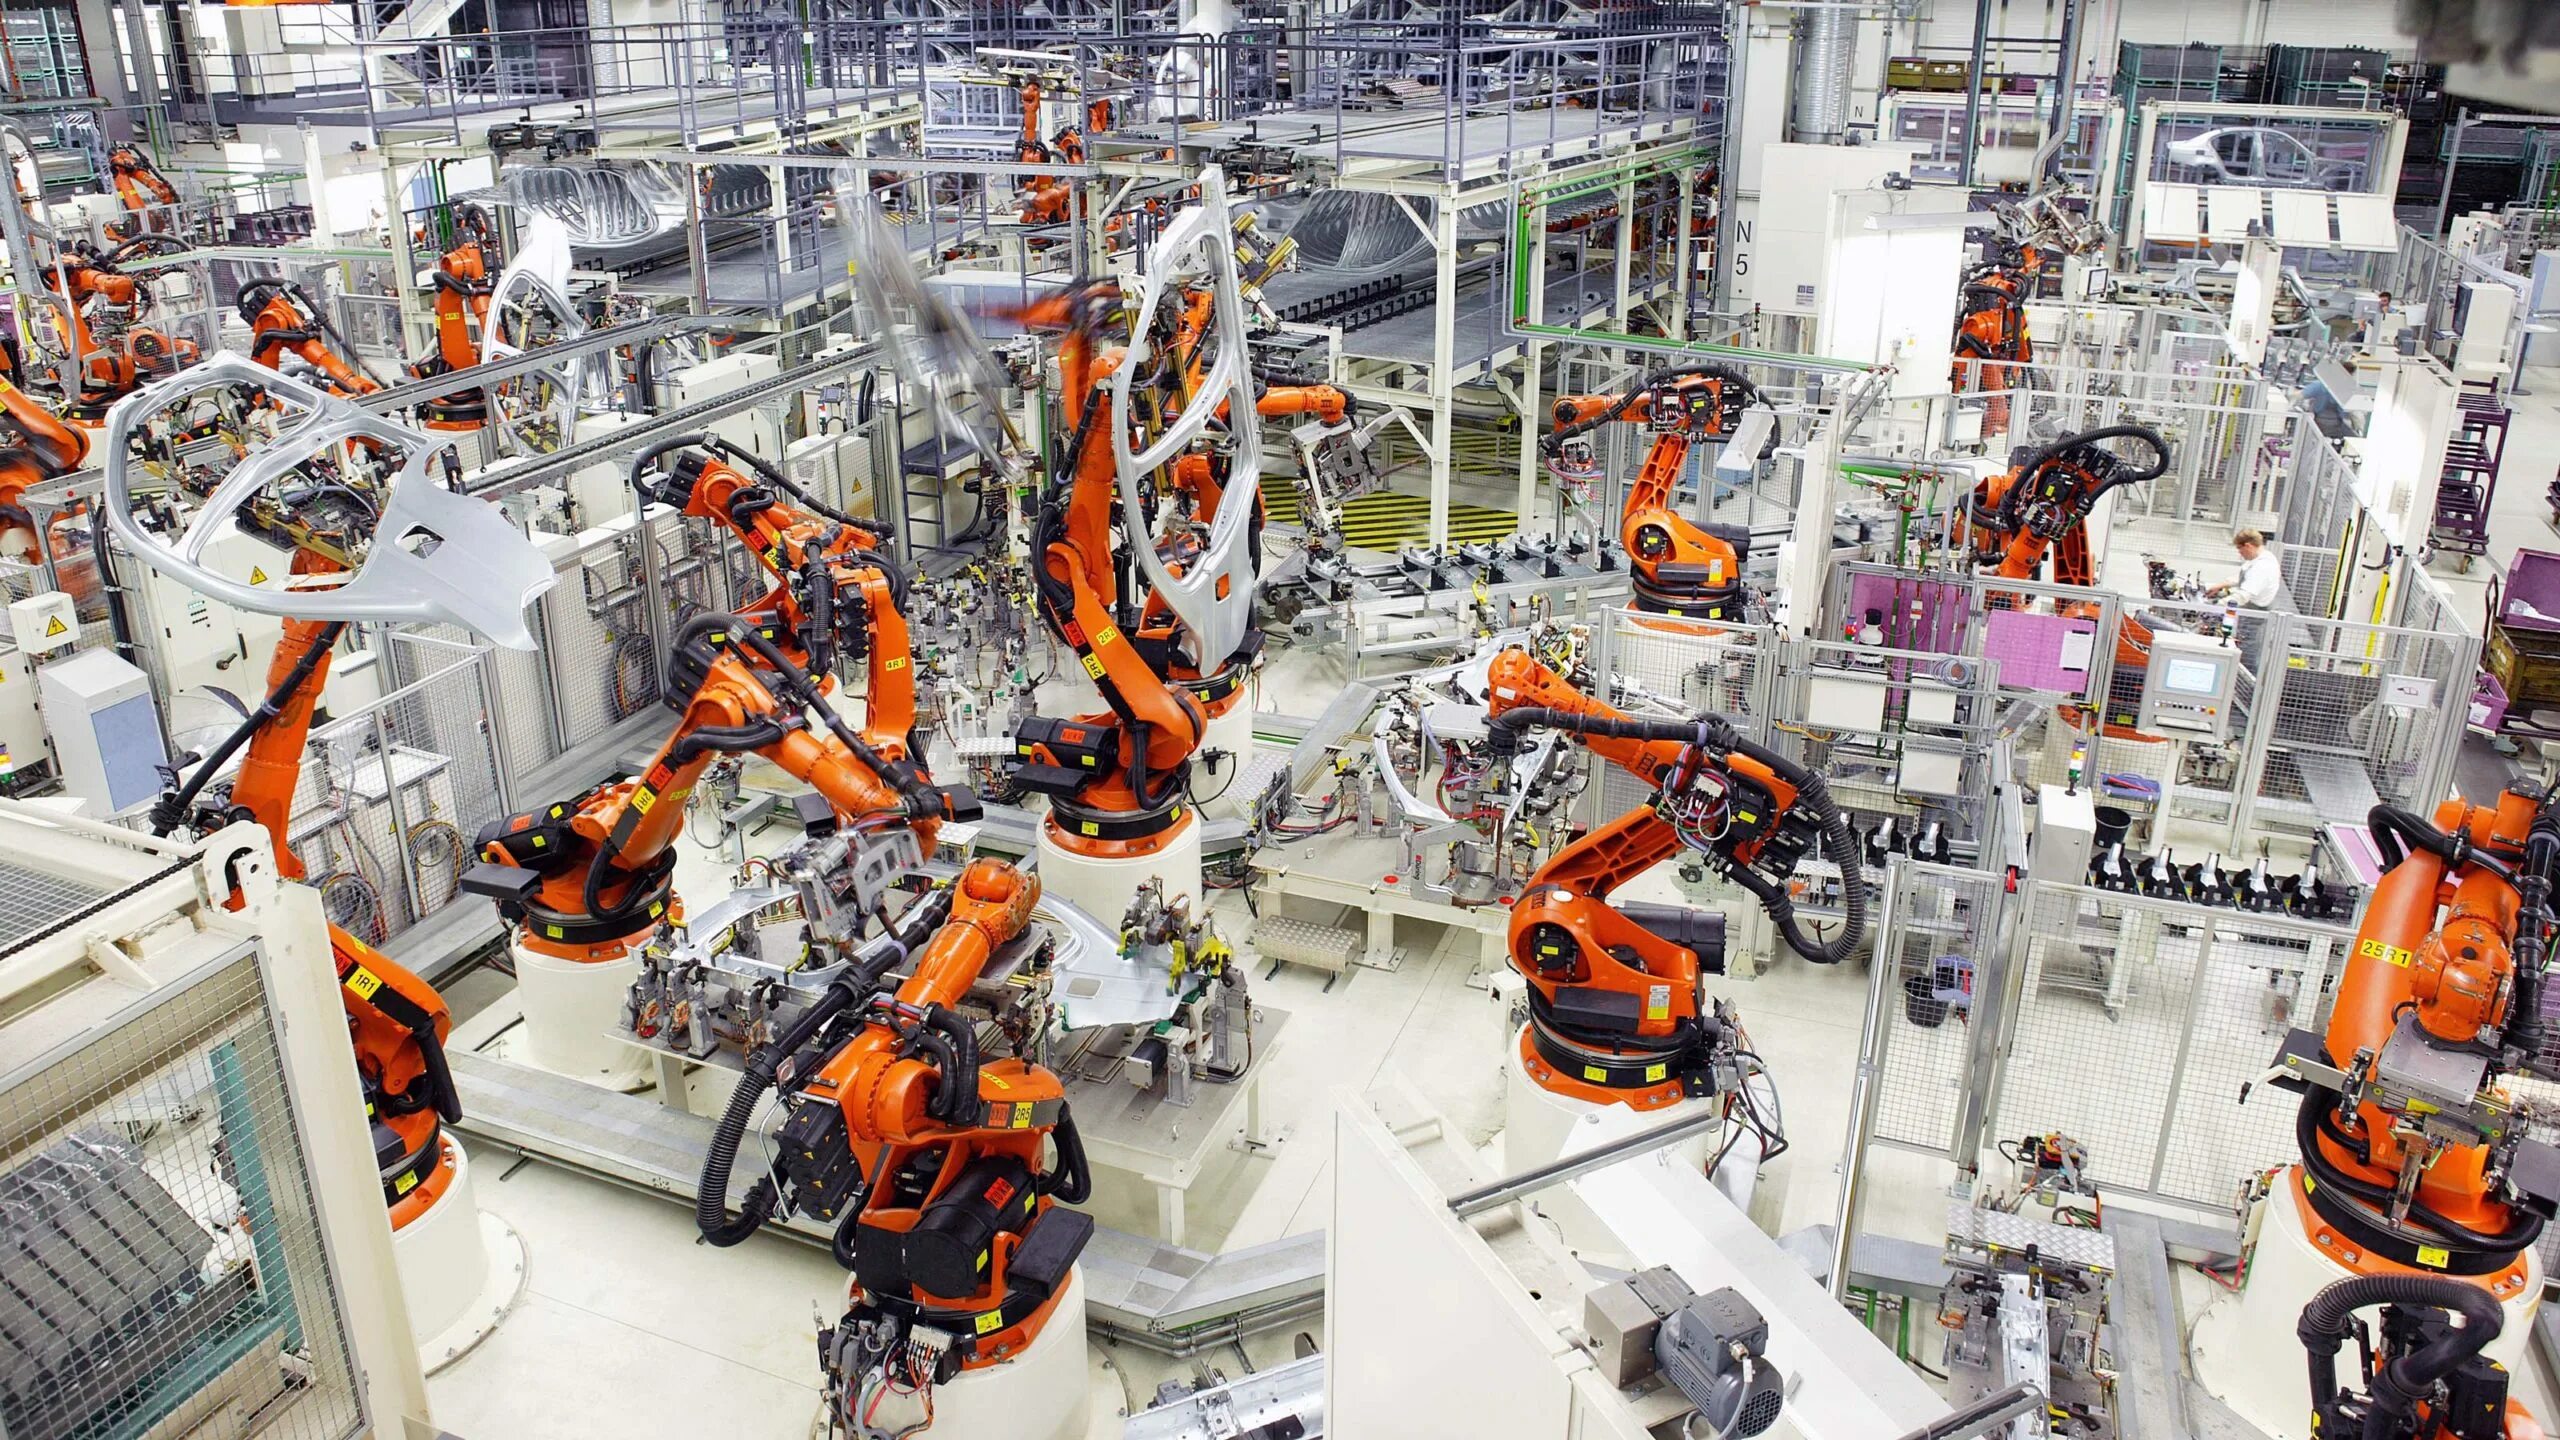 Производство машиностроительной продукции. Завод фабрика kuka в Германии. Kuka промышленные роботы Тесла. Машиностроение промышленность. Современное Машиностроение.